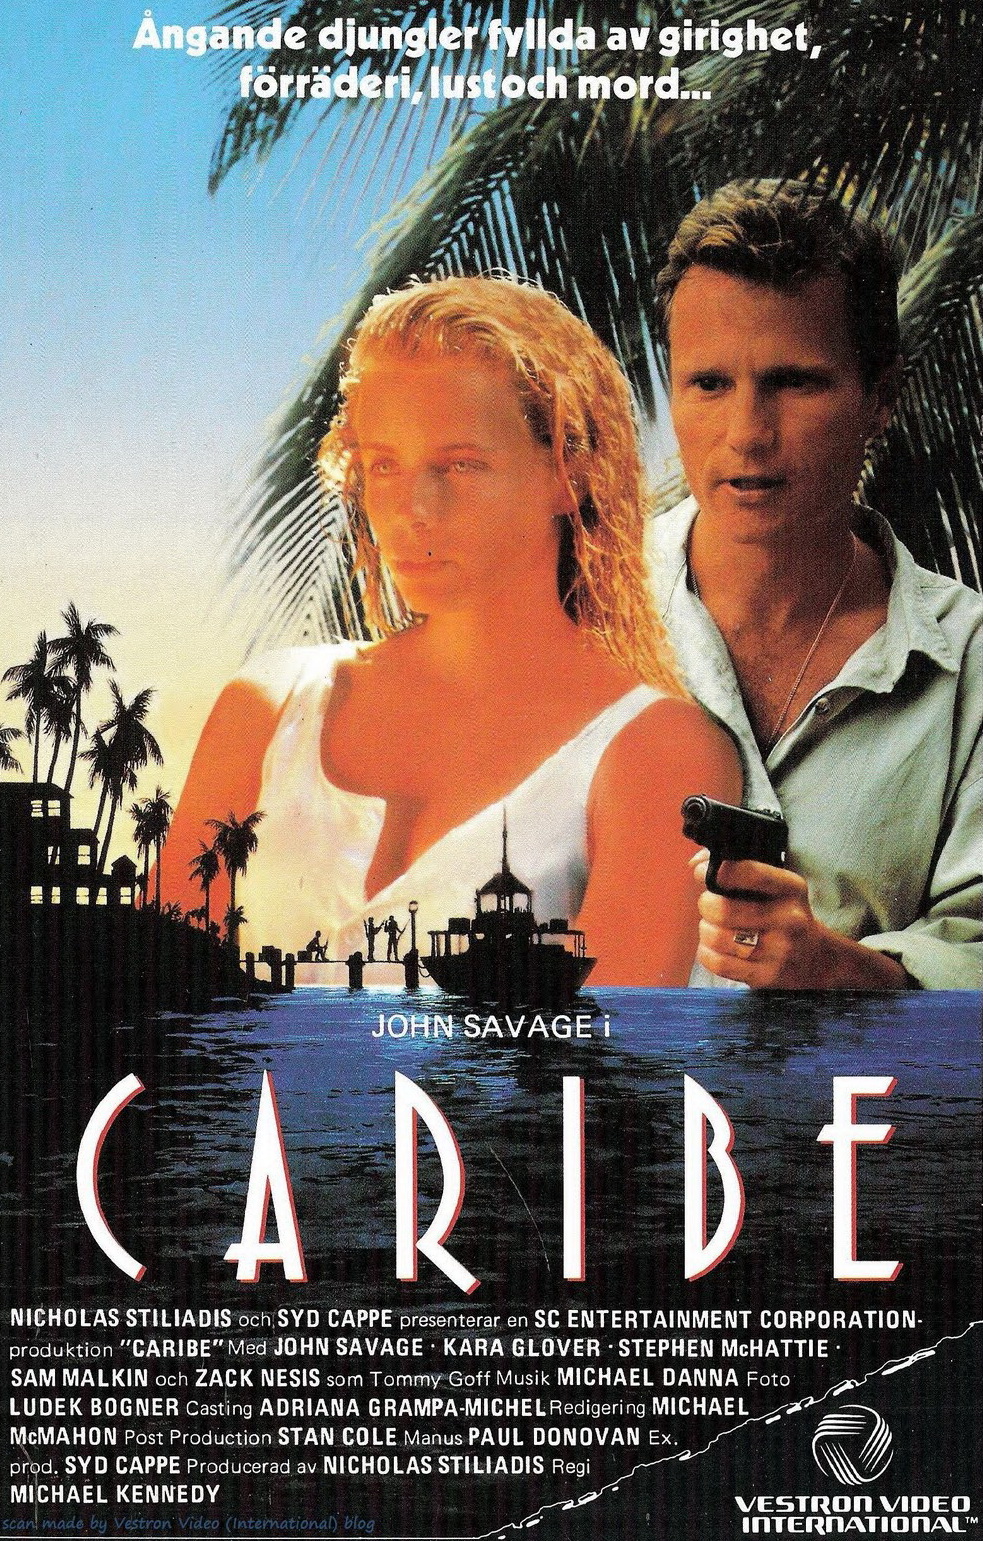 Nebezpecny Caribik / Caribe (1987)(HD)(720p)(x264)(EN-CZ) = CSFD 42%